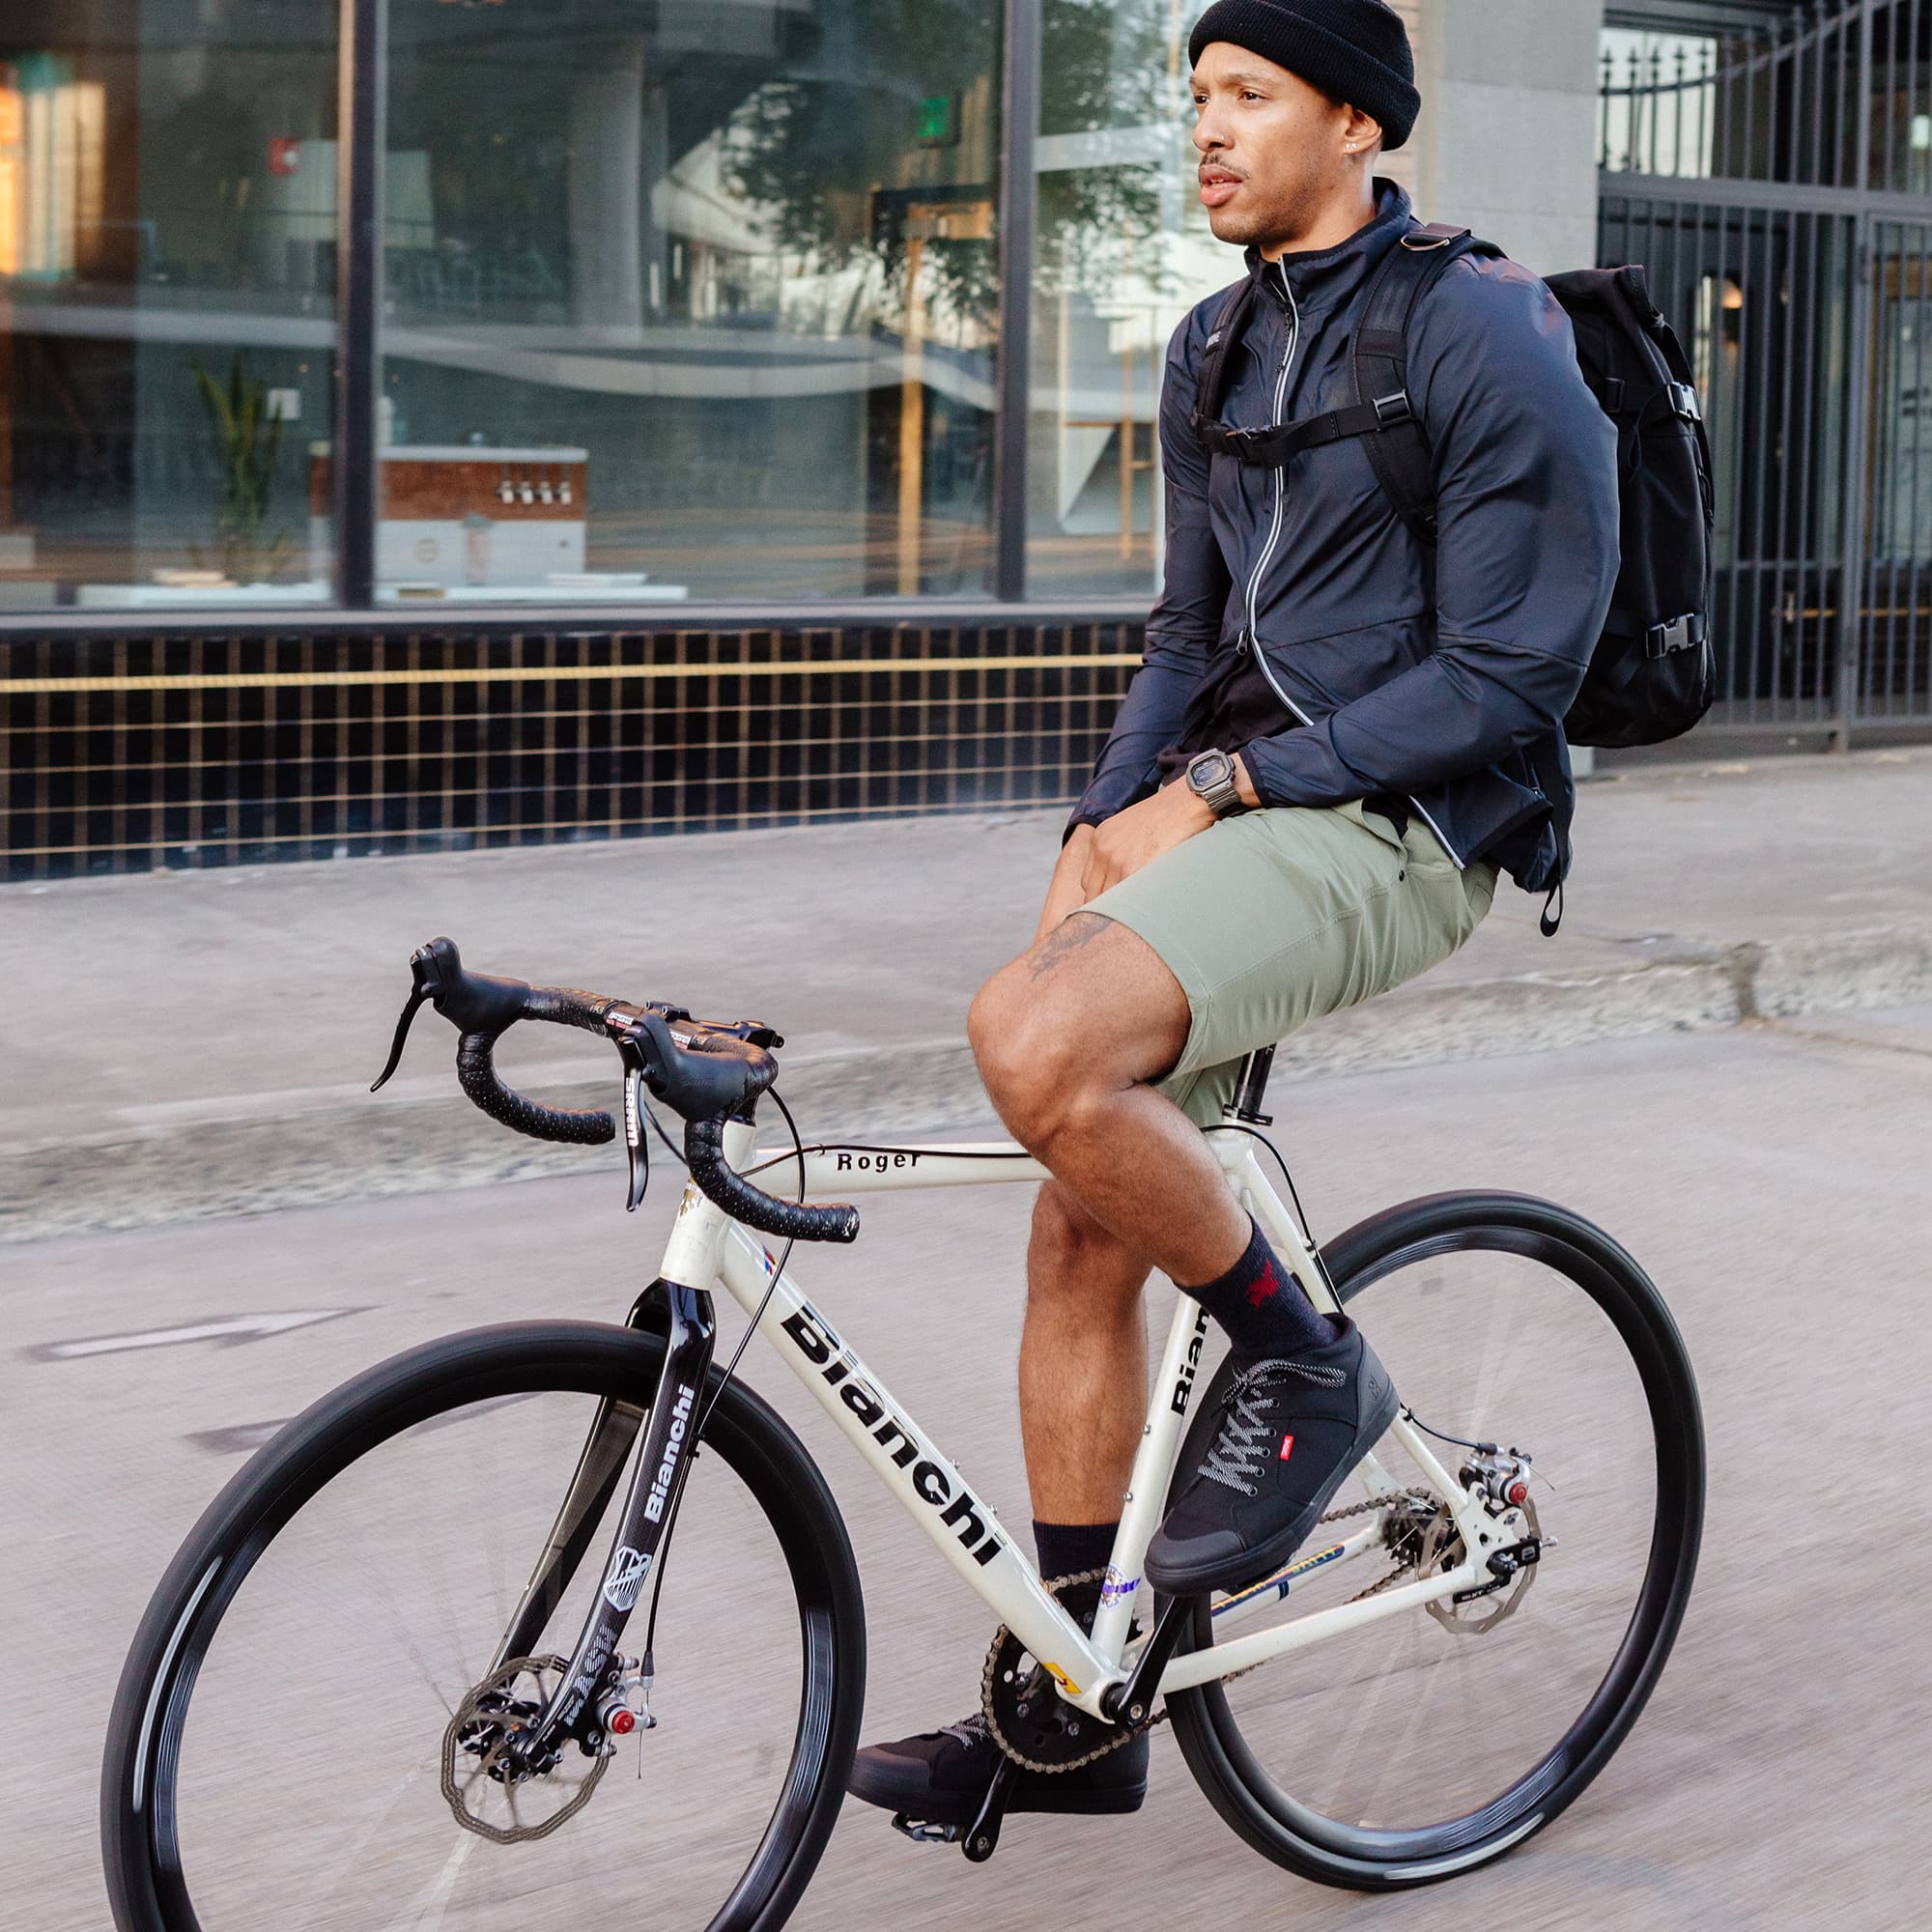 Man on a bike wearing the Southside high top sneaker in black